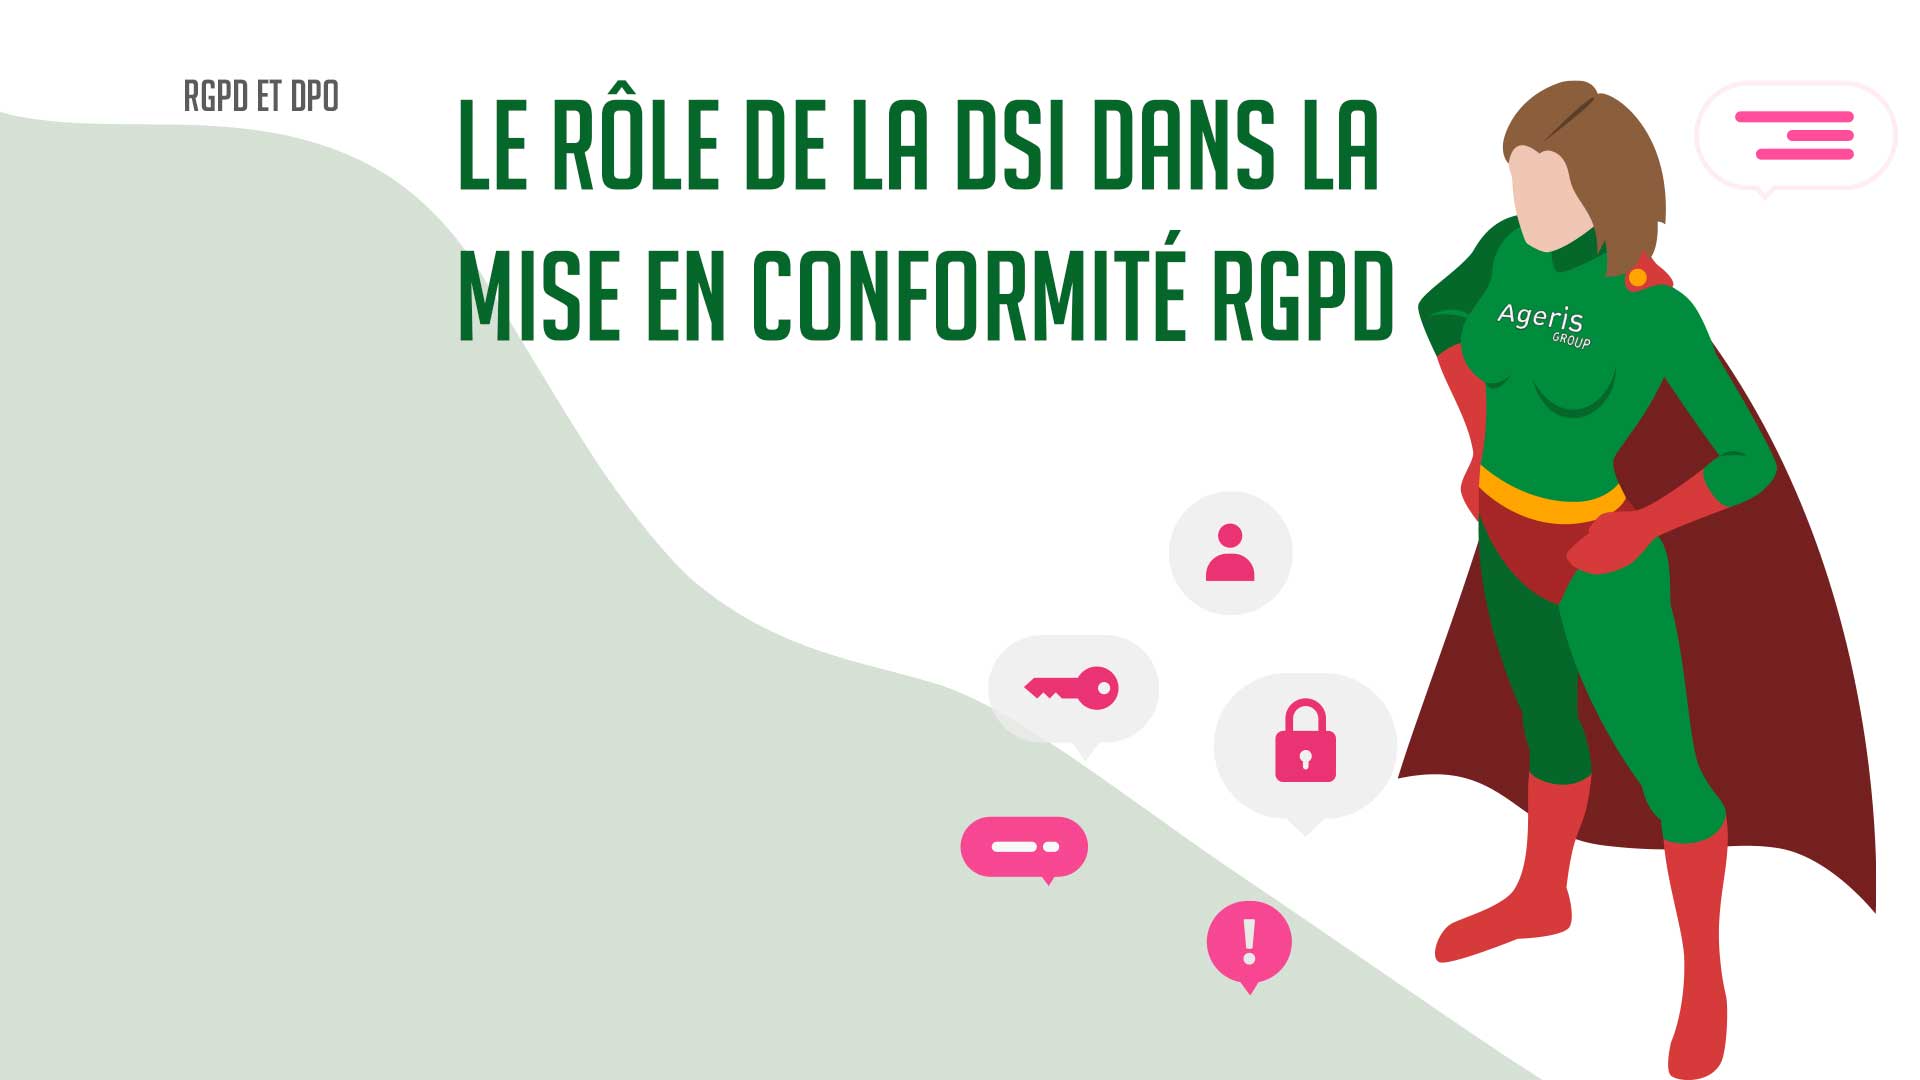 Le rôle de la DSI dans la mise en conformité au RGPD